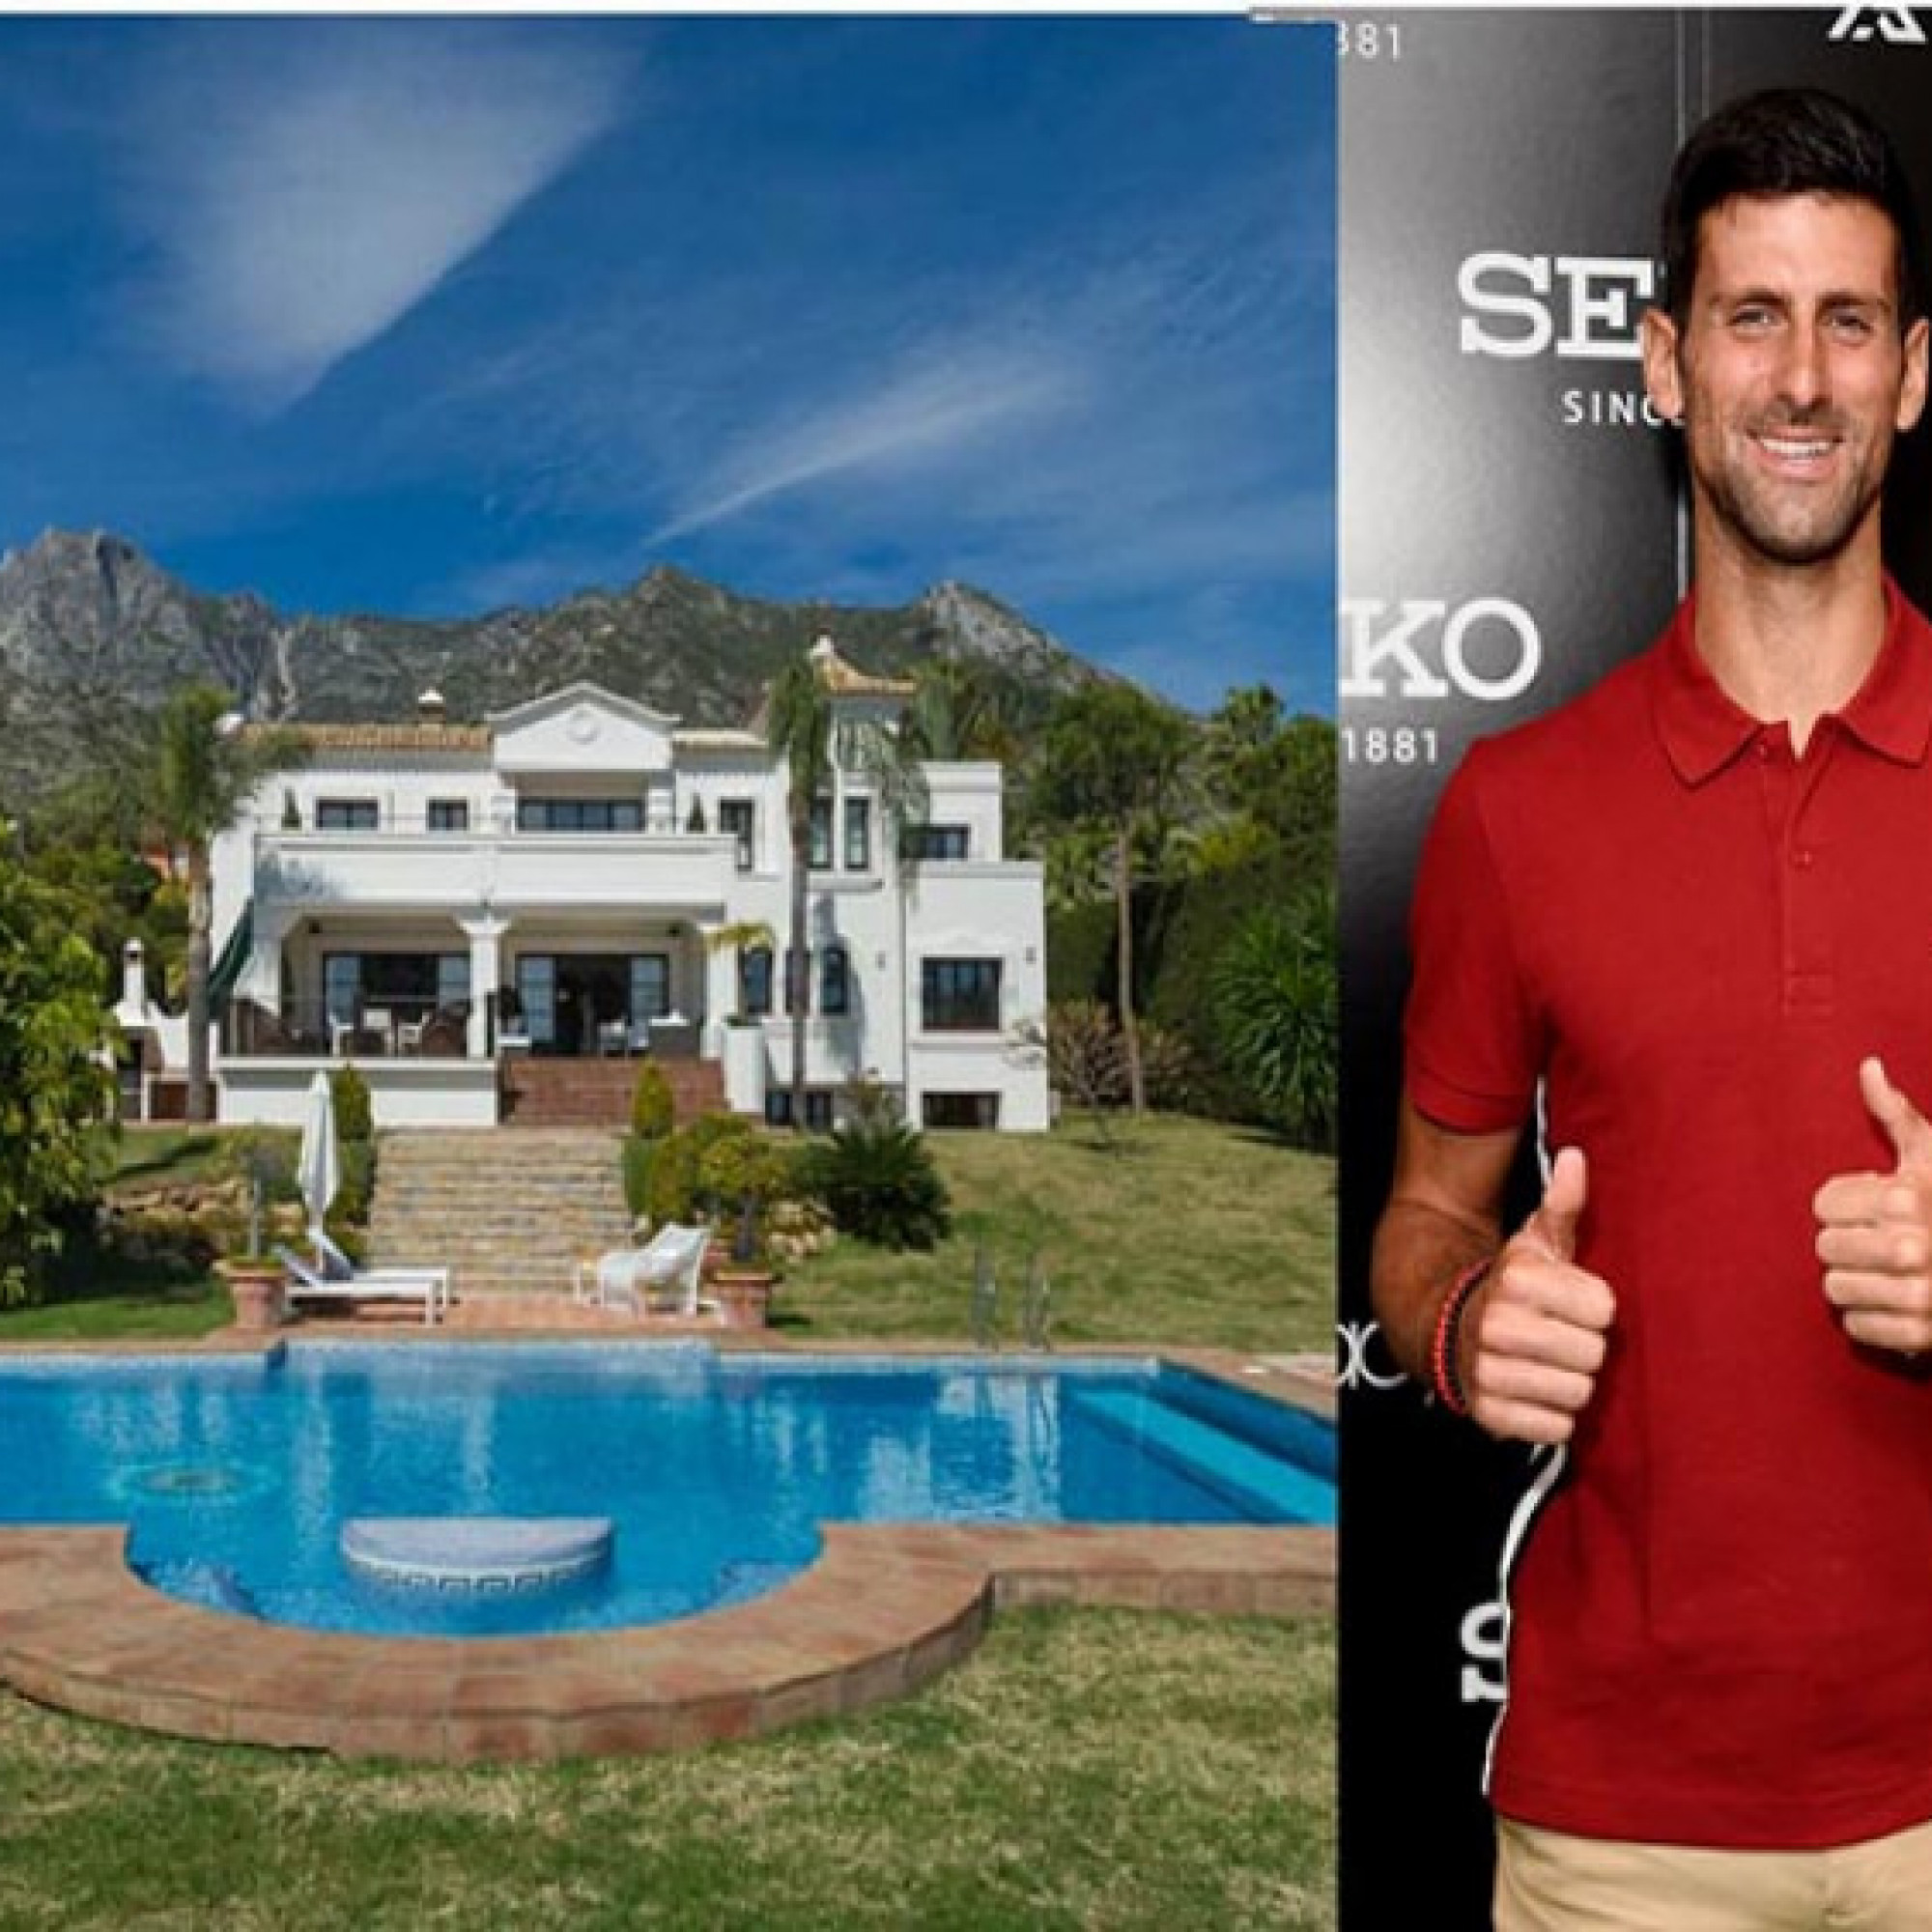  - Djokovic “đổi phong thủy” biệt thự 257 tỷ đồng sau khi bị Australia trục xuất